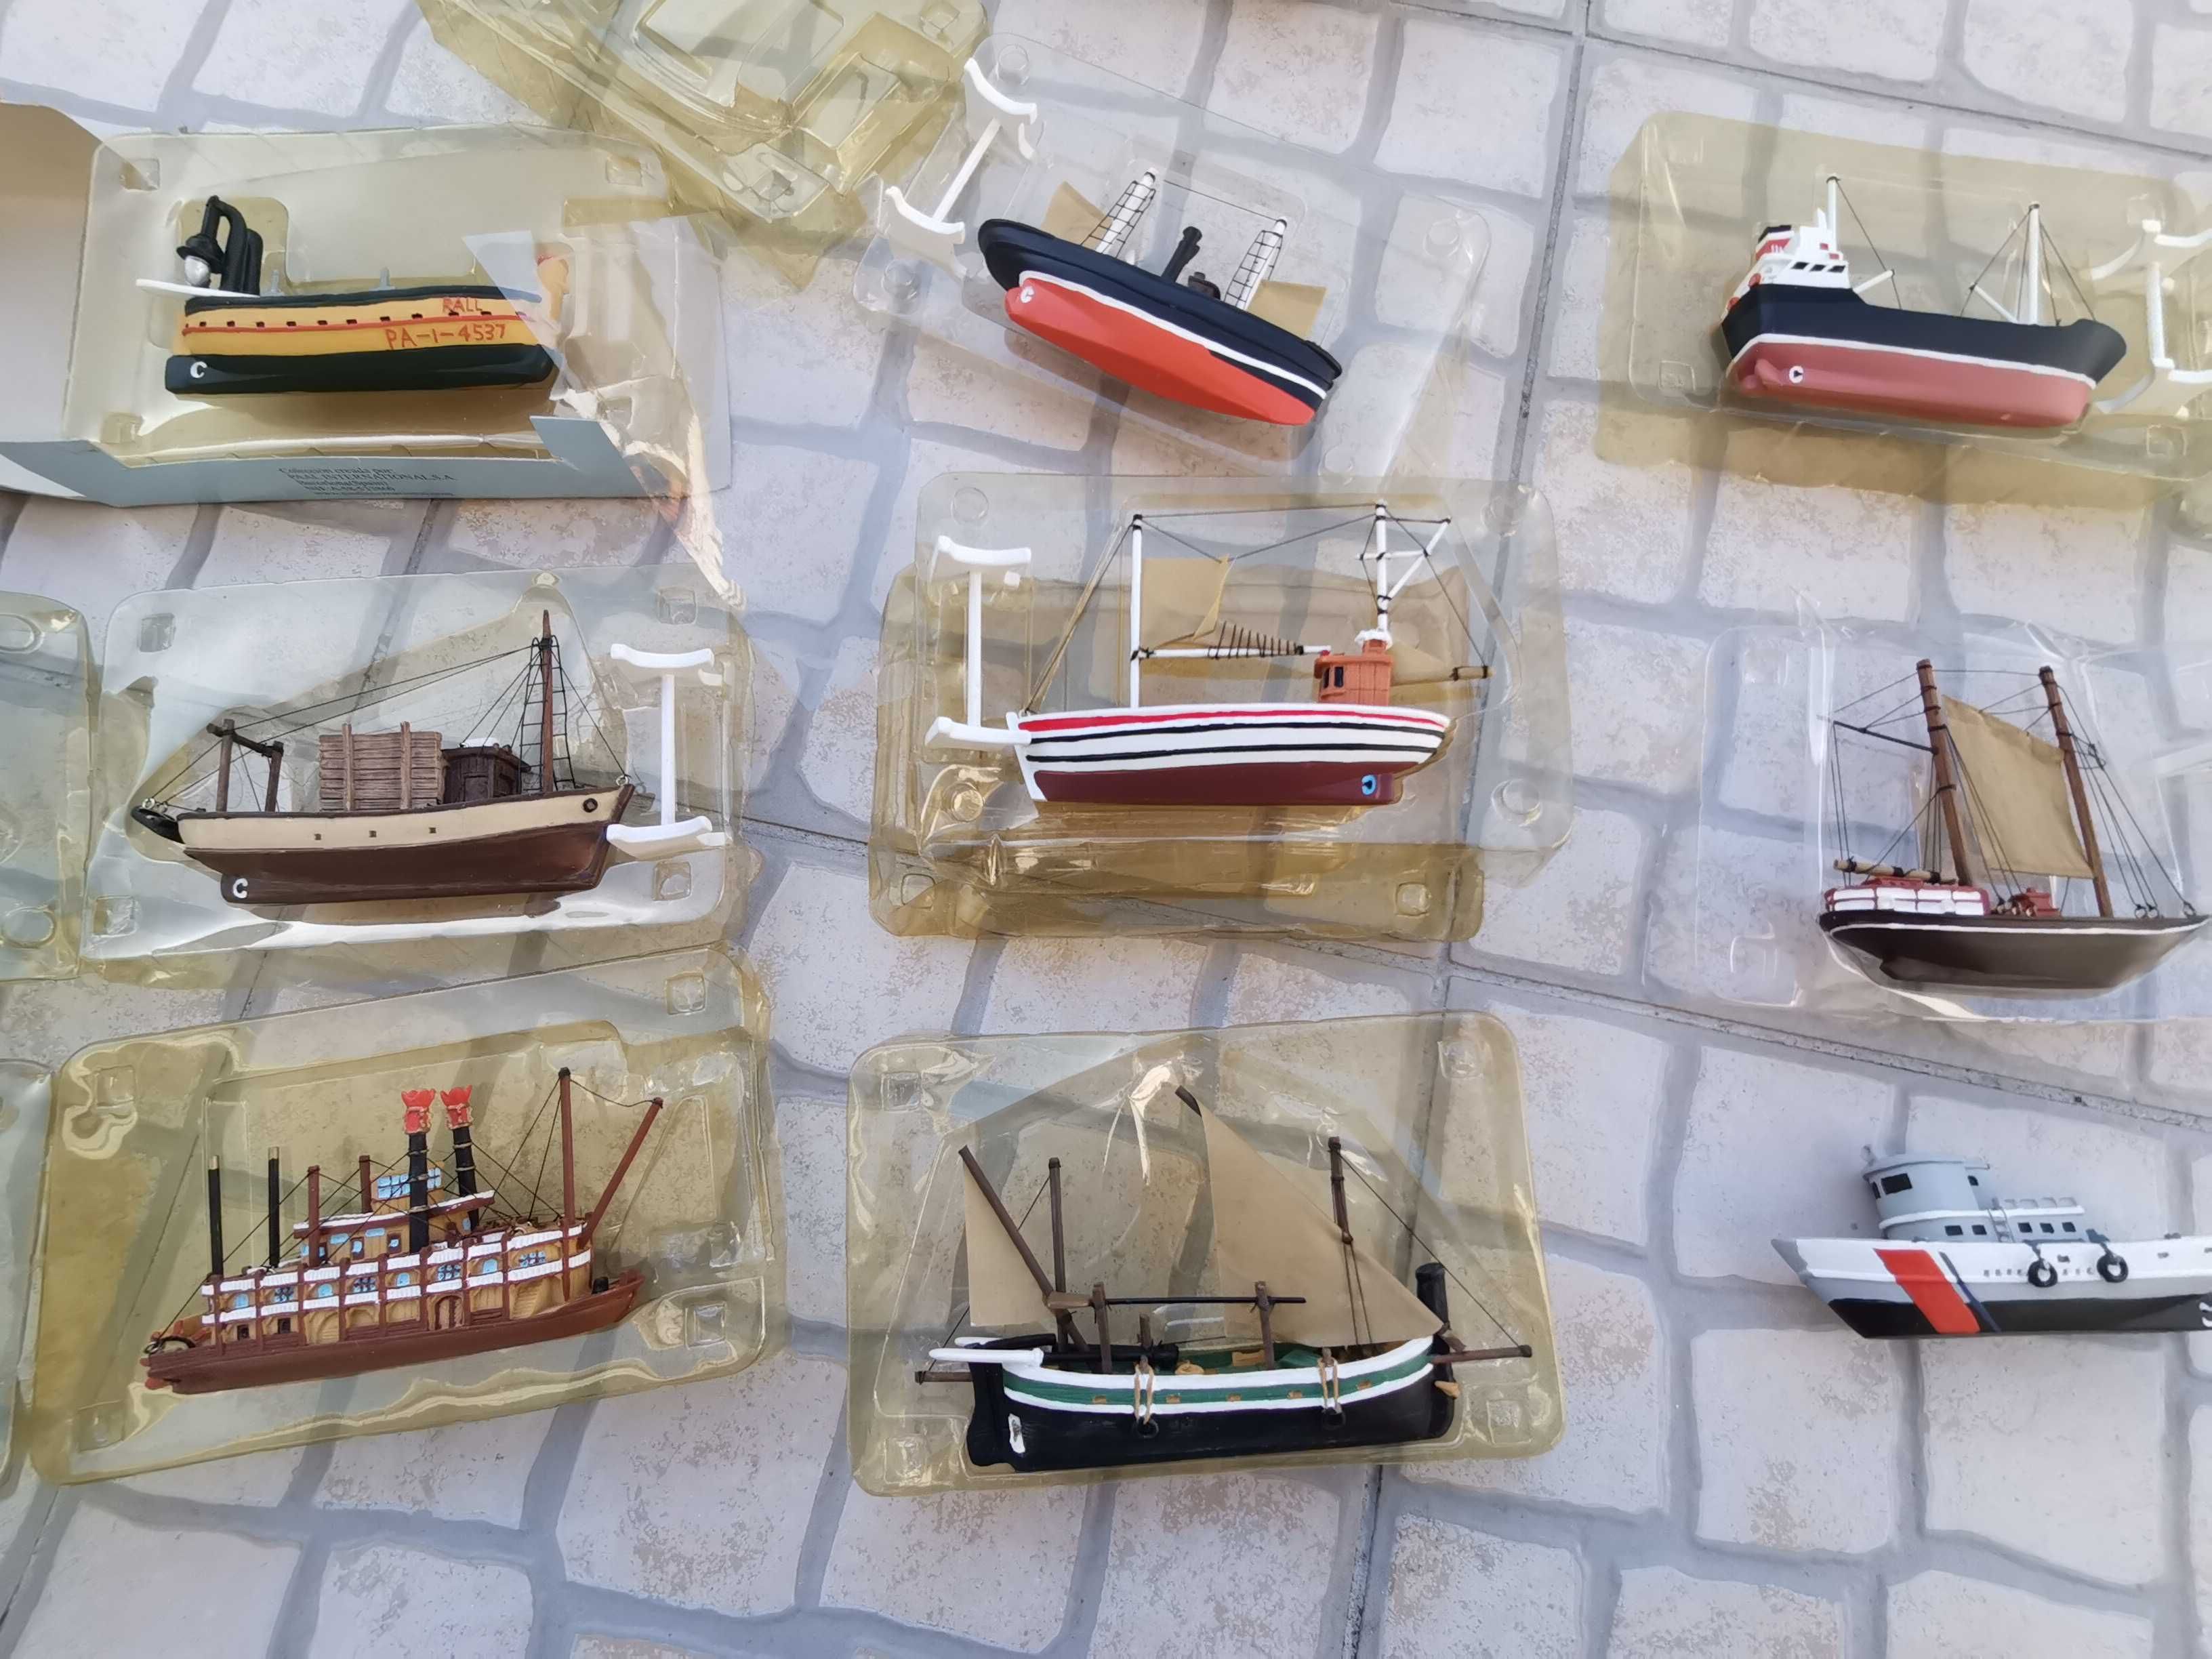 Miniaturas barcos à escala